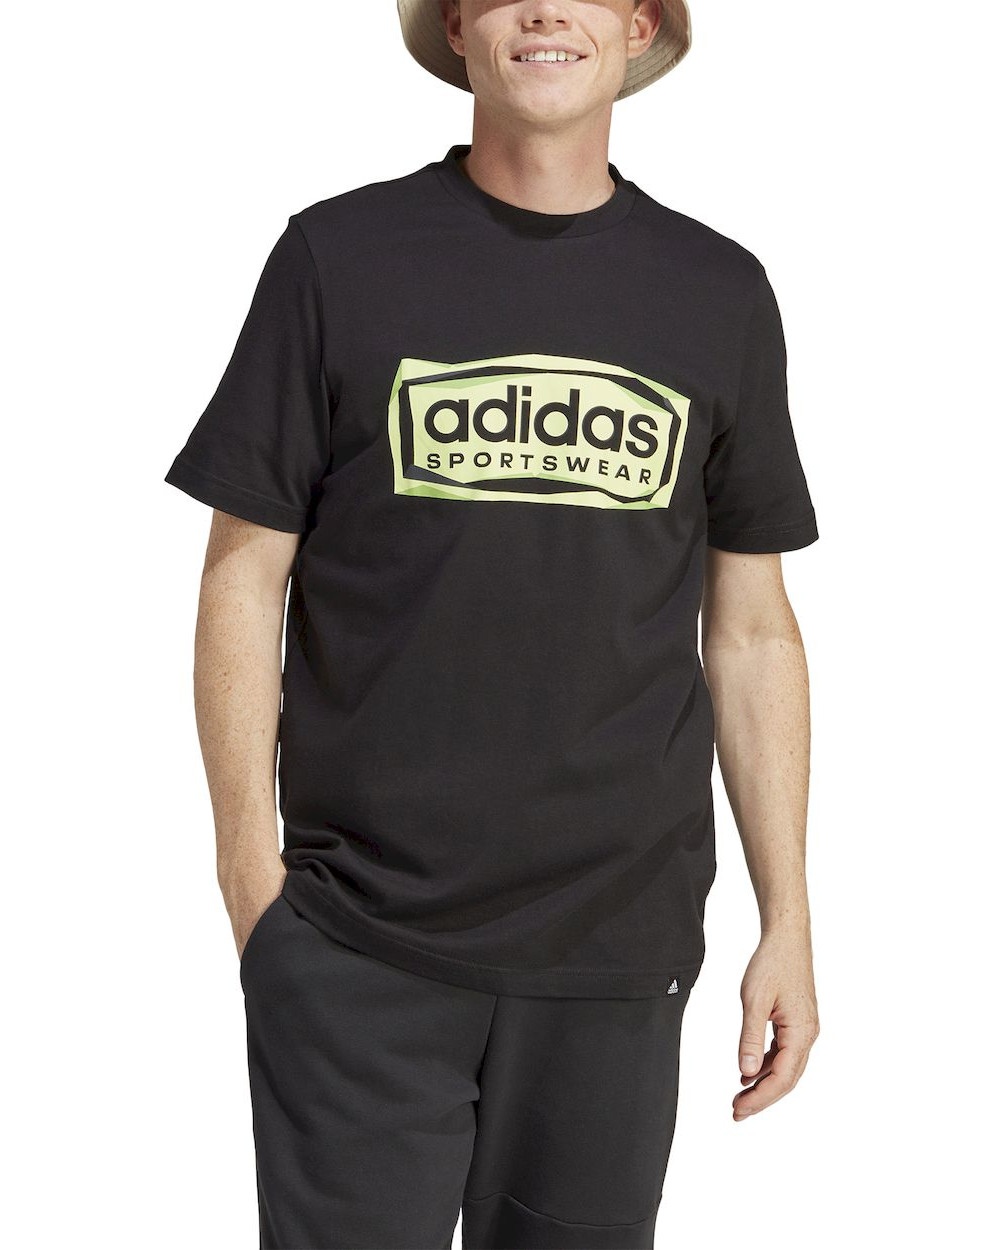  T-shirt maglia maglietta UOMO Adidas Nero Giallo Folded Sportswear Graphic